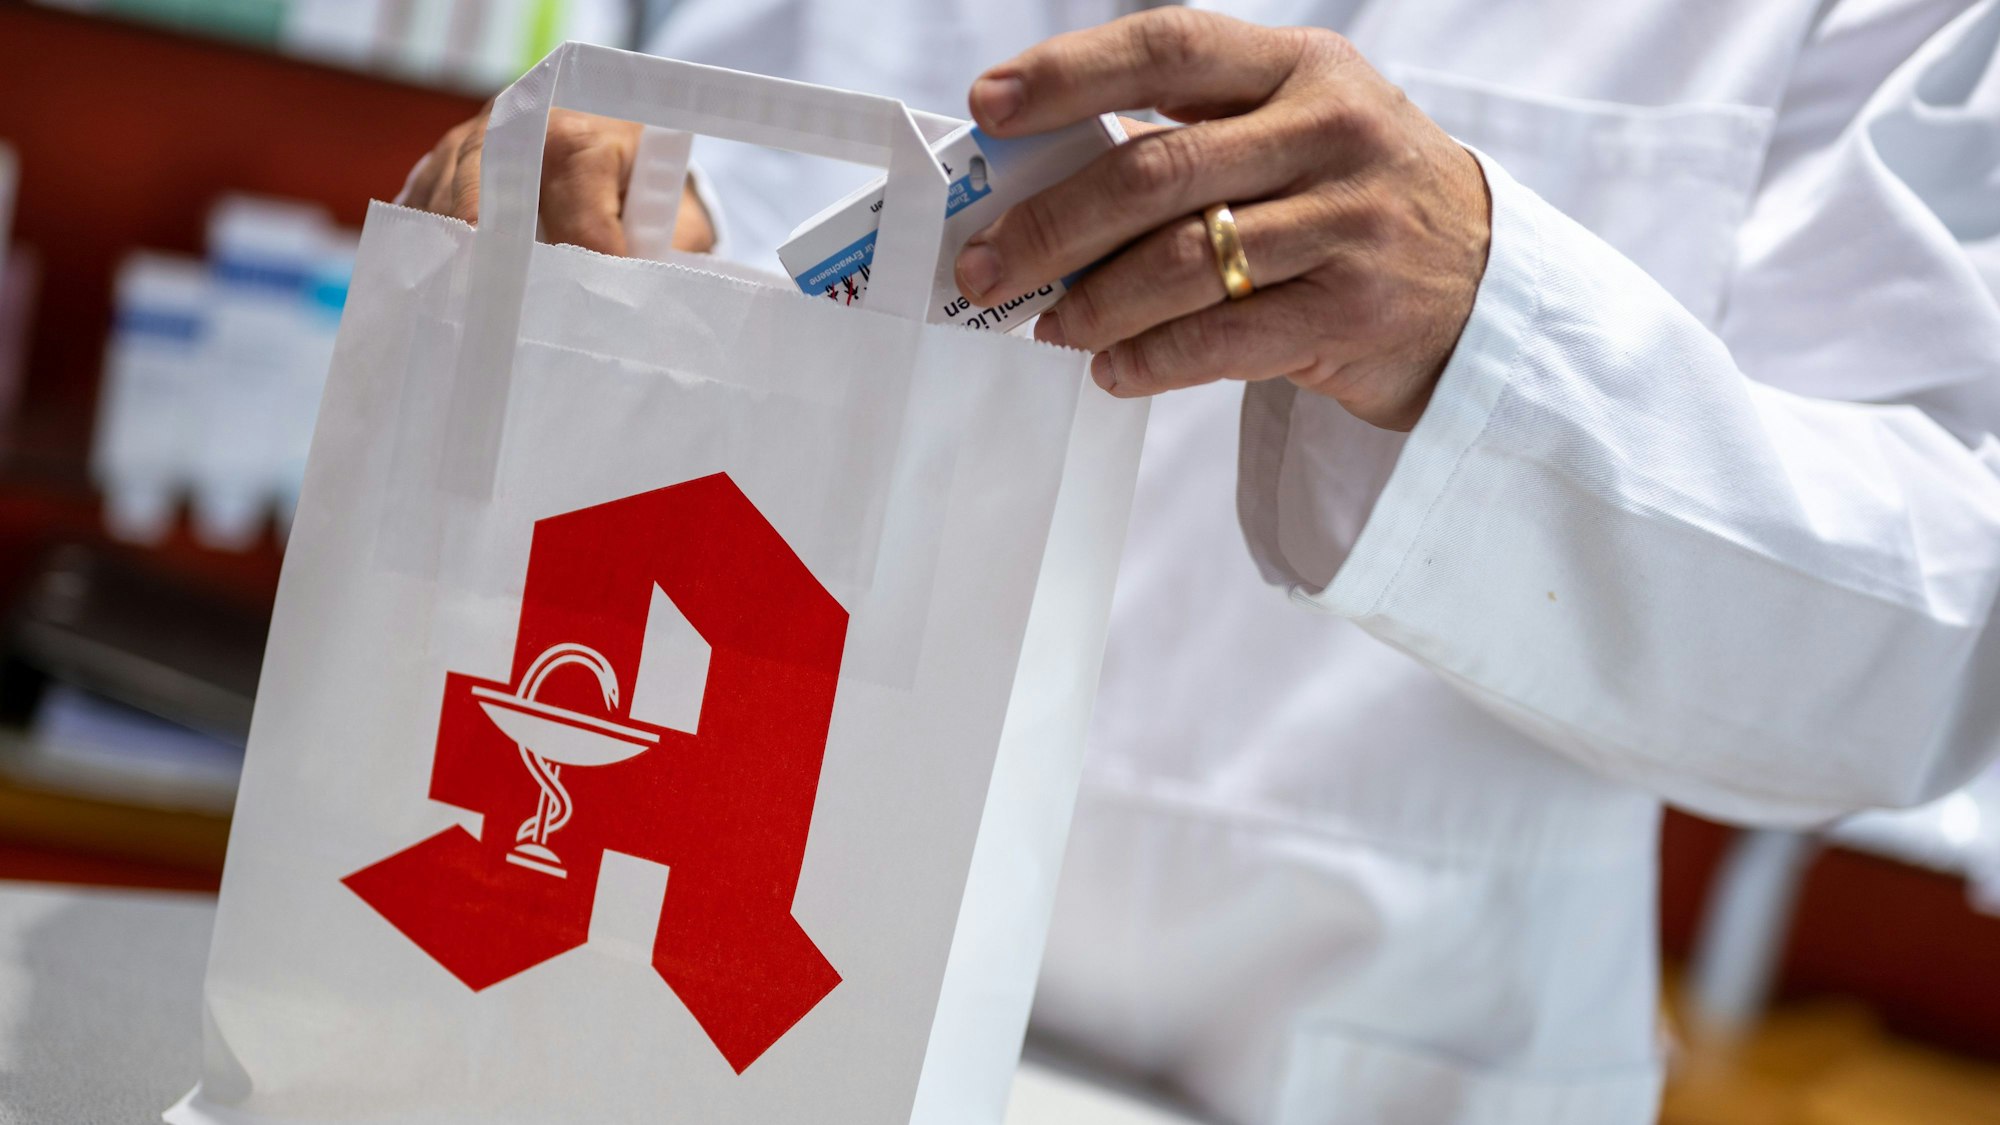 Ein Apotheker legt in einer Apotheke eine Packung mit Tabletten in eine Papiertasche mit Apotheken-Logo.